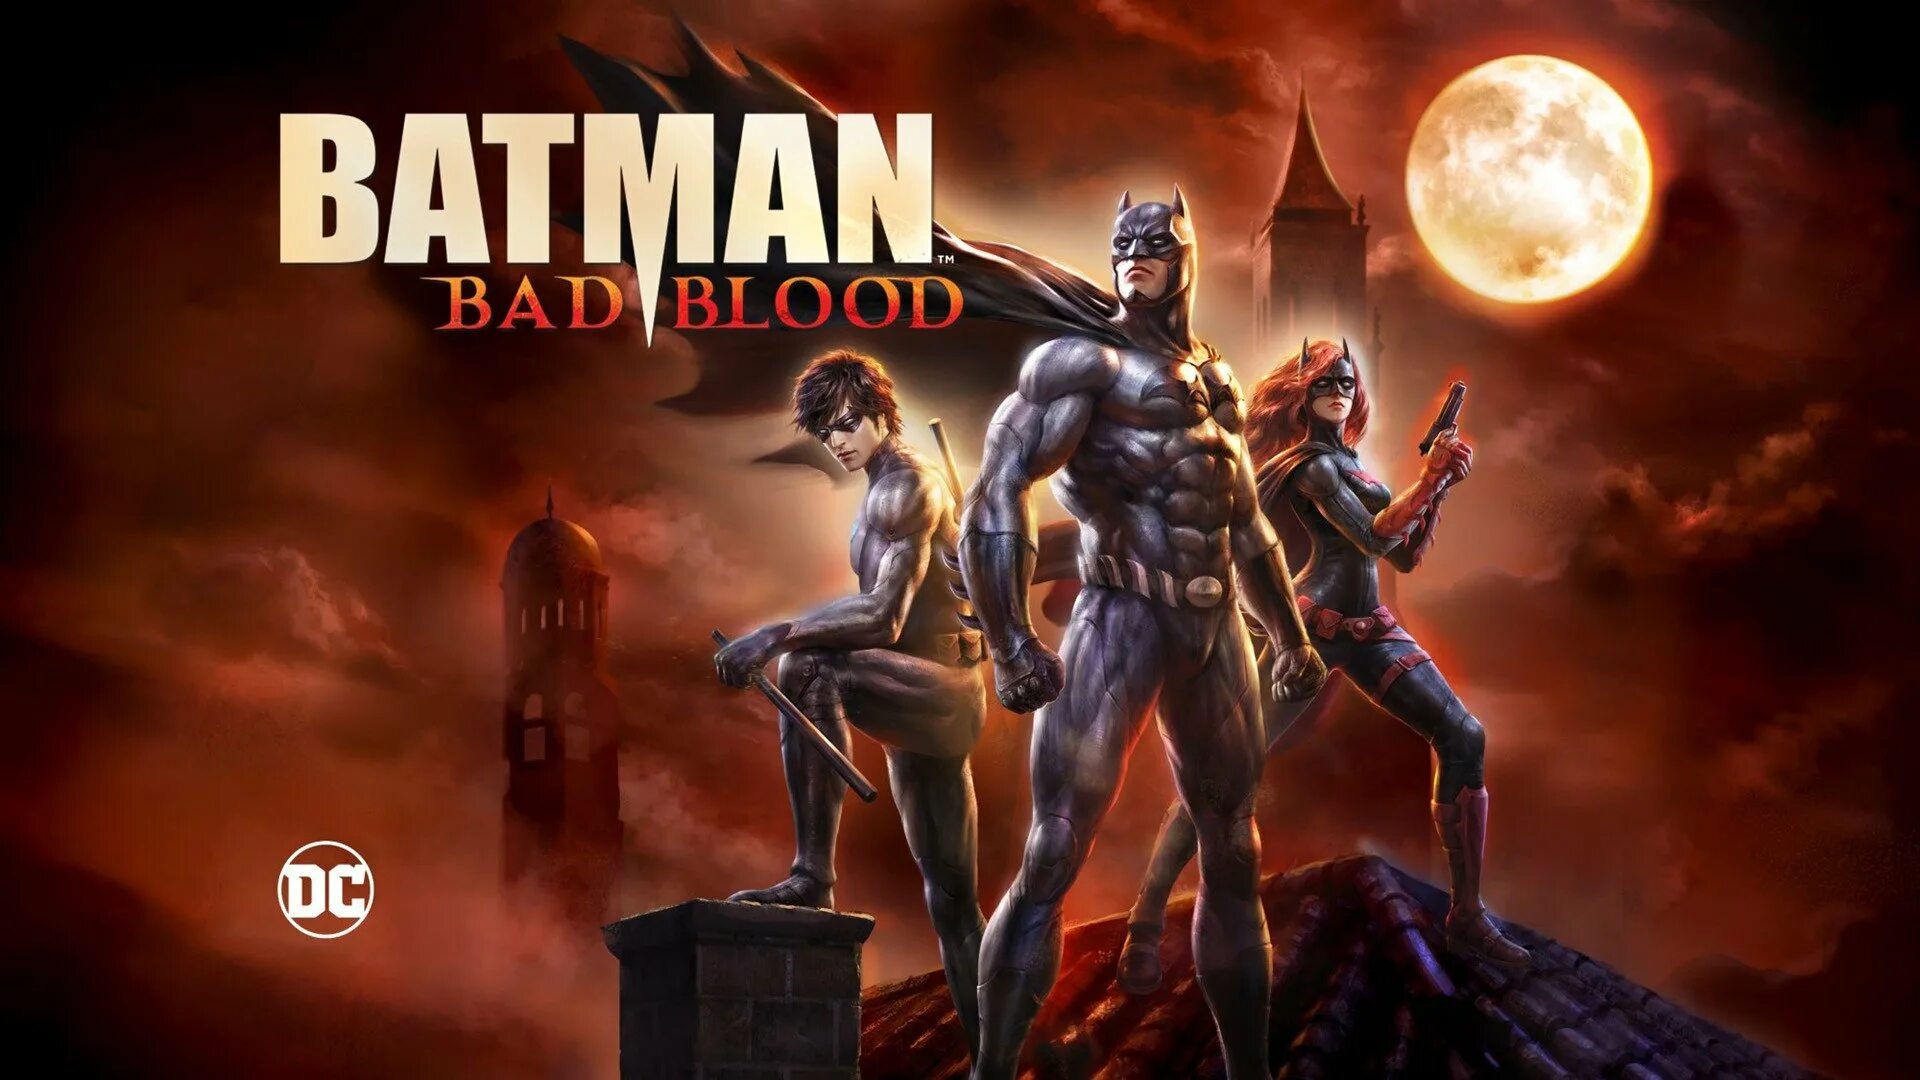 Бэтмен: дурная кровь (2016). Бэтмен дурная кровь Бэтвумен. Бэтмен дурная кровь Бэтвинг. Бэтмен дурная кровь Постер. Bad batman